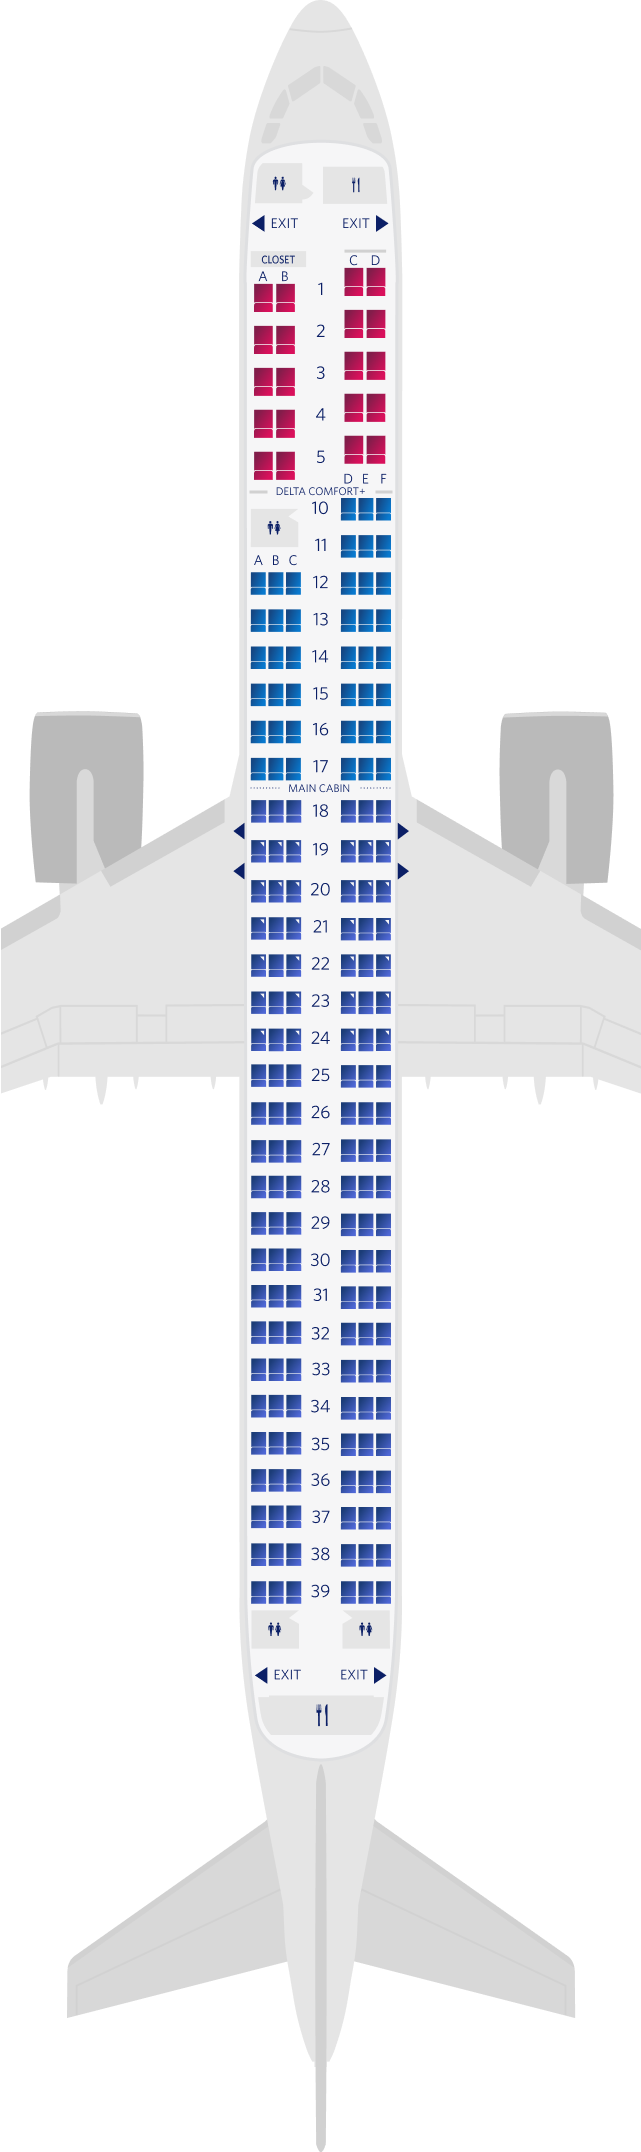 Mappa dei posti dell’Airbus A321neo (3 classi di viaggio)